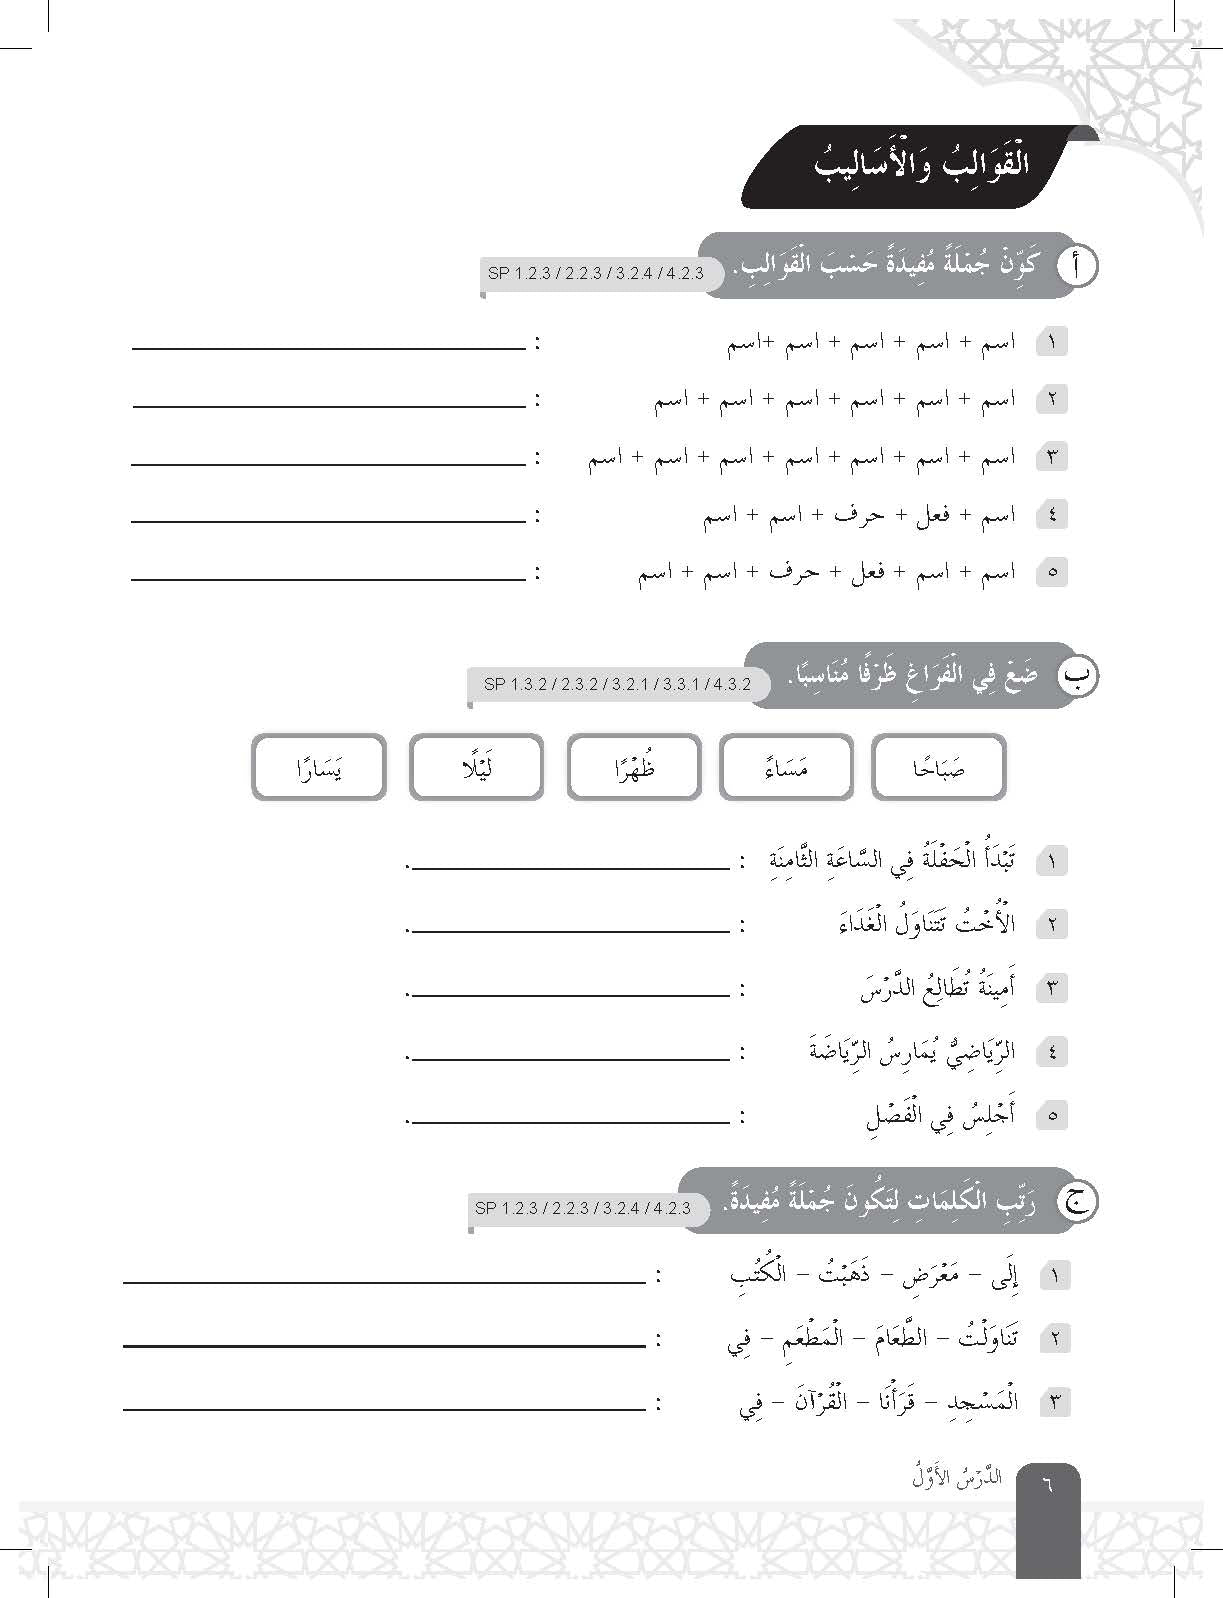 Speed Score A+ Latihan Topikal Bahasa Arab Tingkatan 3 - (TBBS1329)